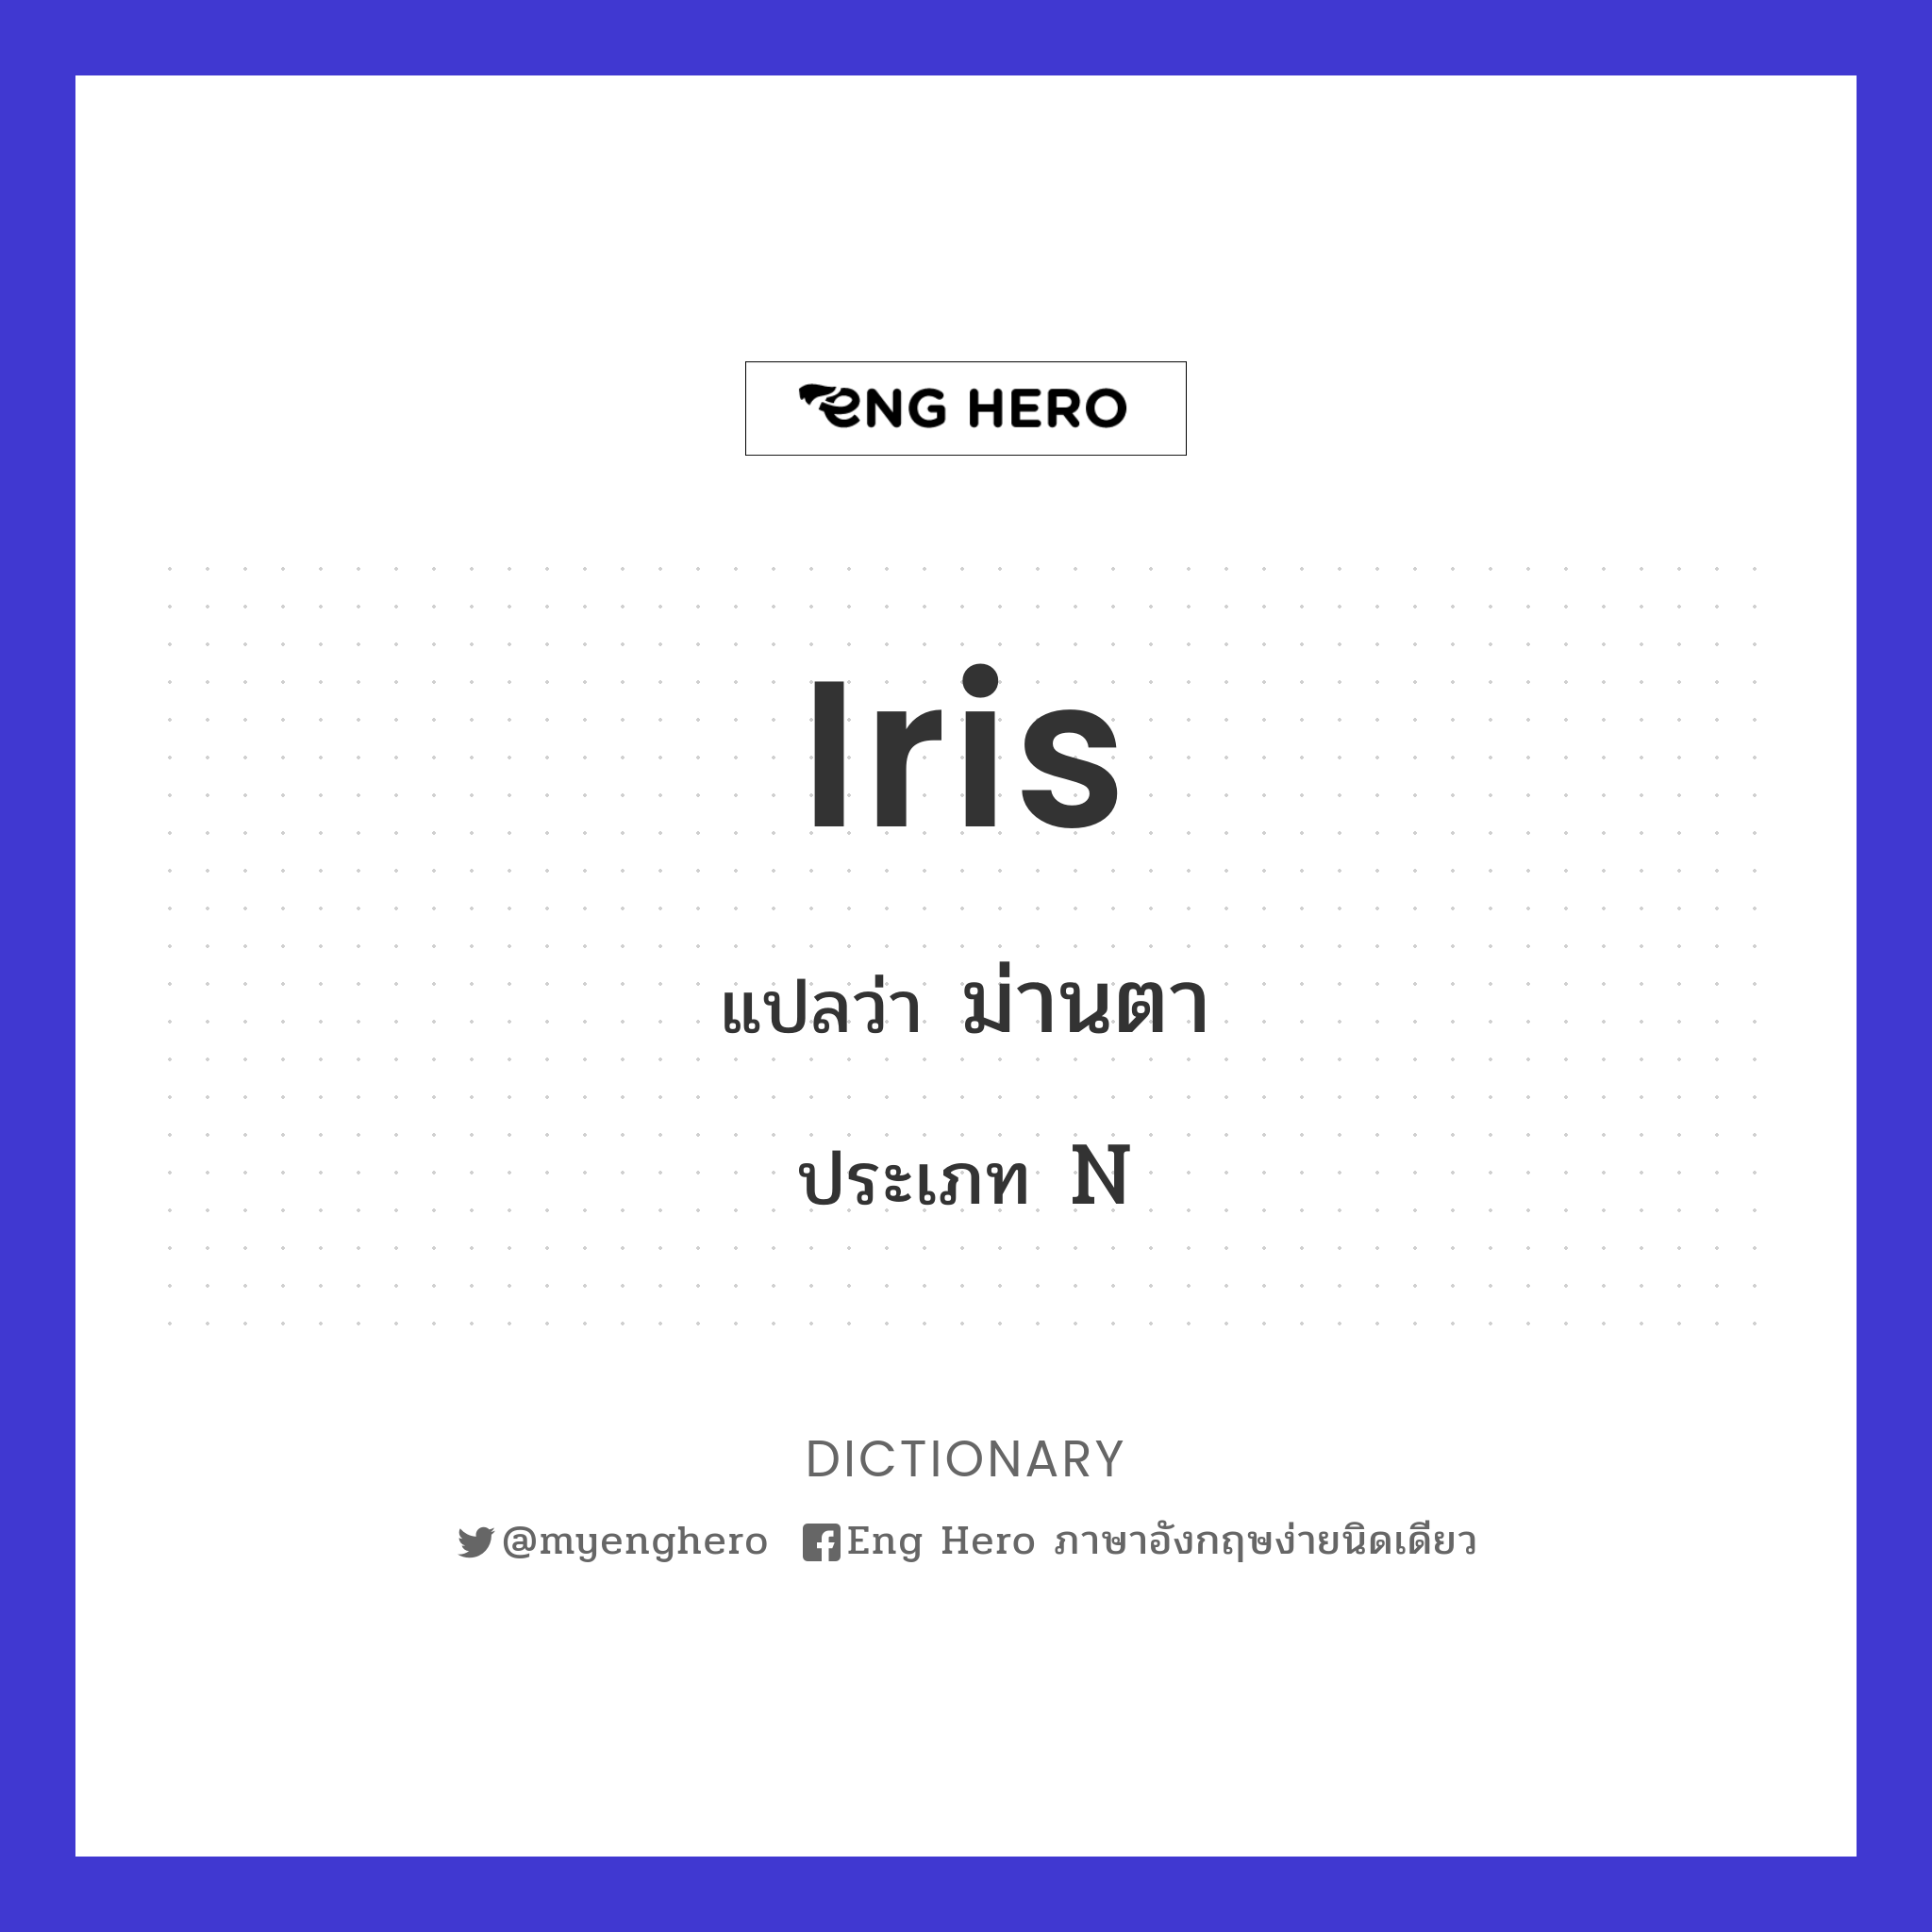 iris